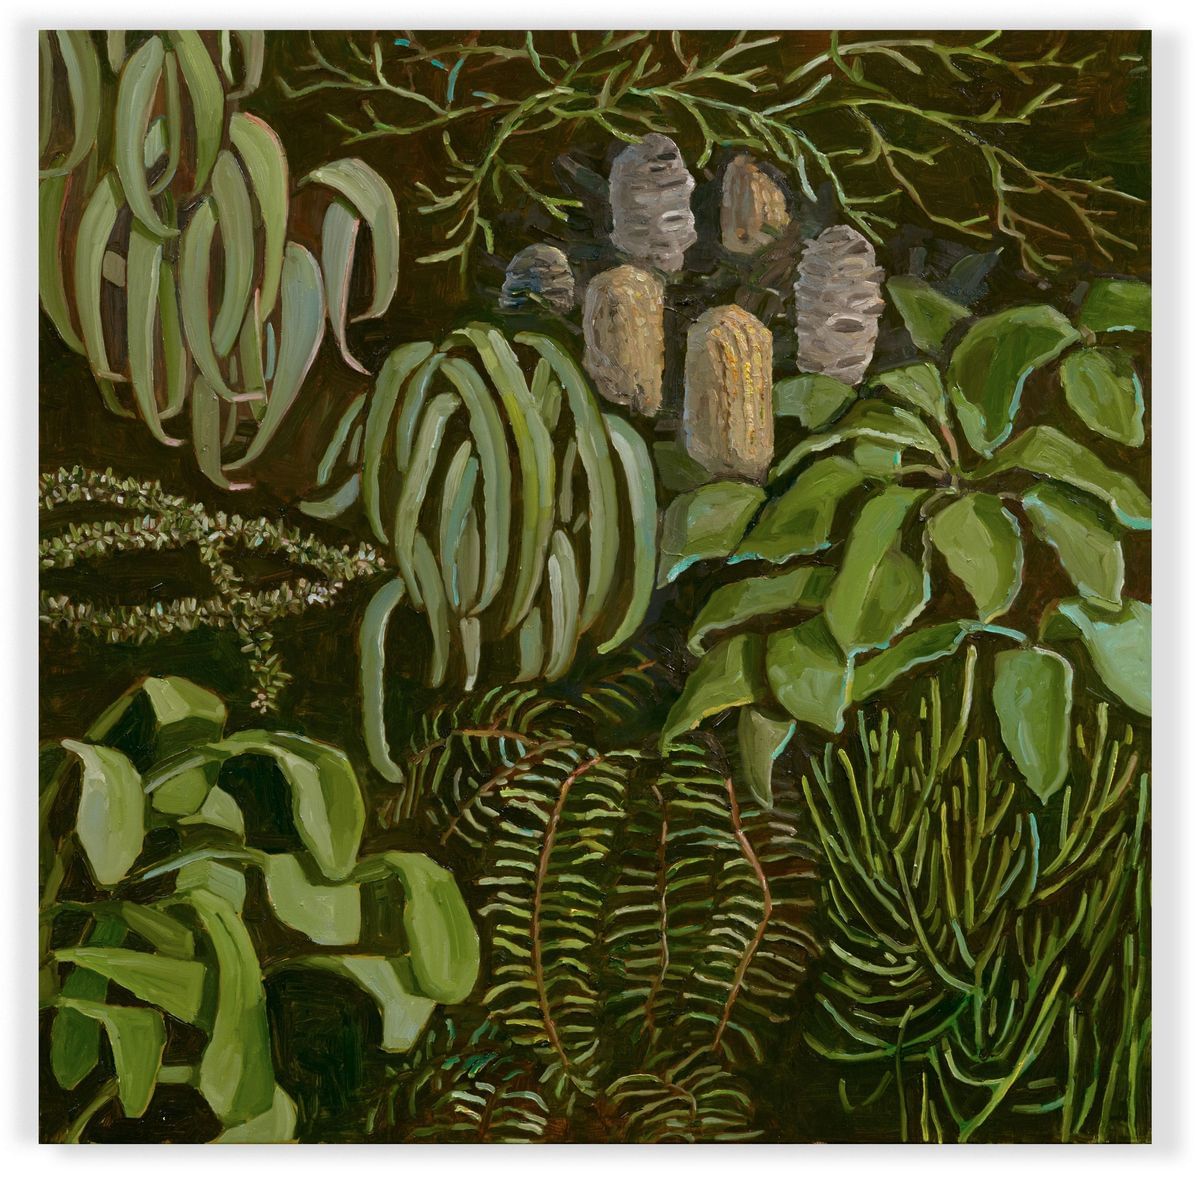 Jane Guthleben - Floralscape Wollemi (detail) - panel 1